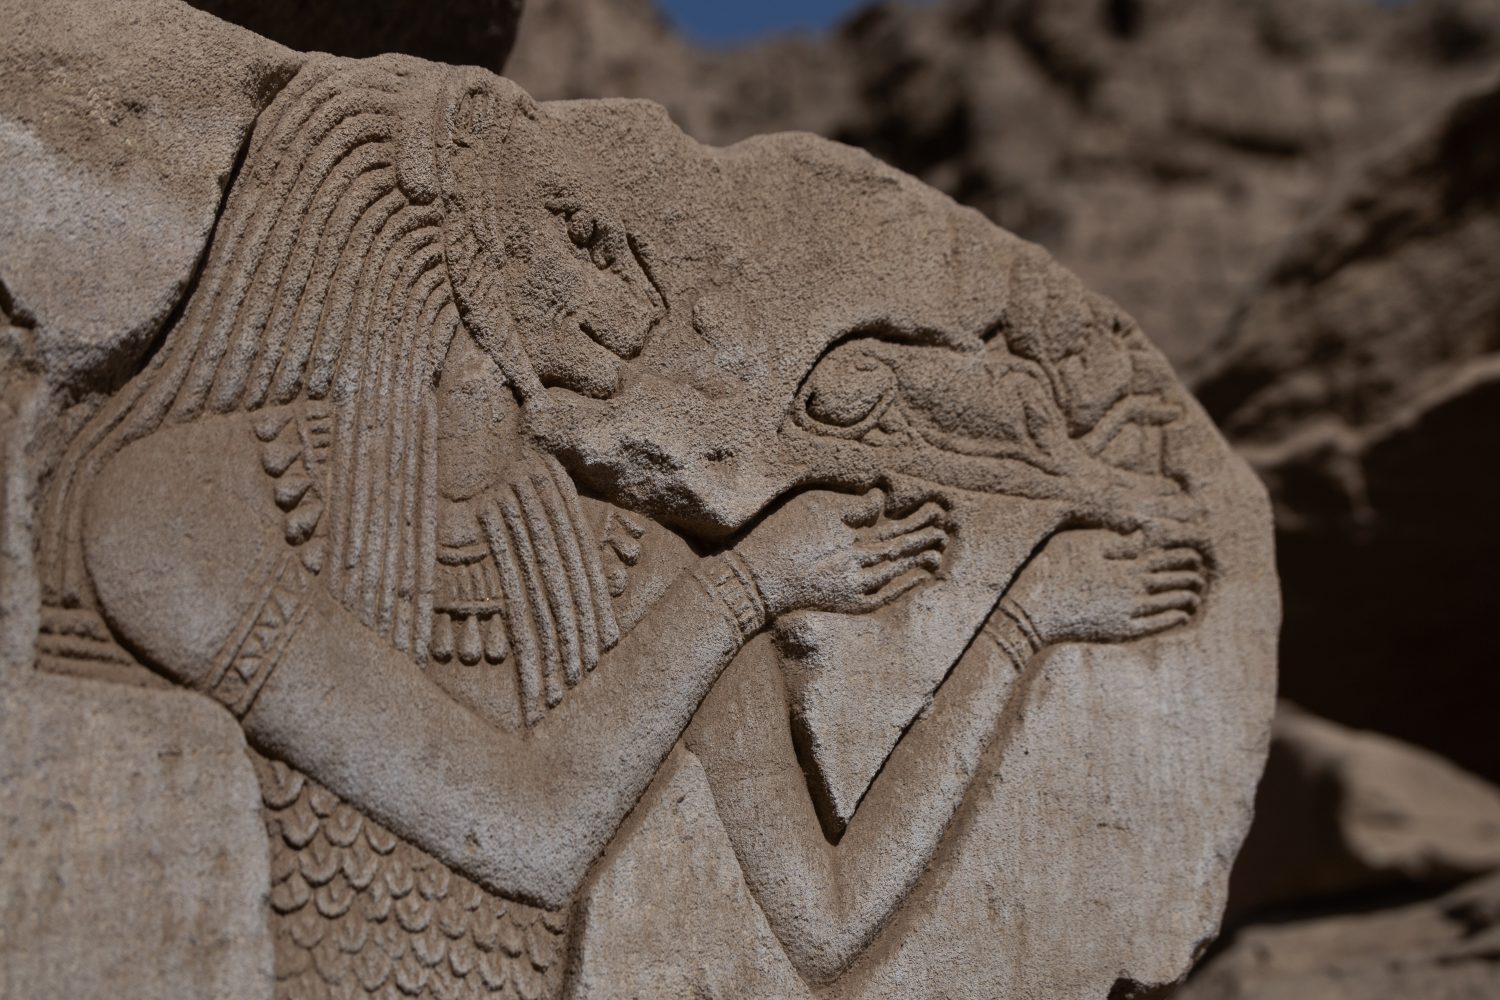 L'antica dea guerriera egiziana Sekhmet sul muro del tempio di Dendera.  Egitto.